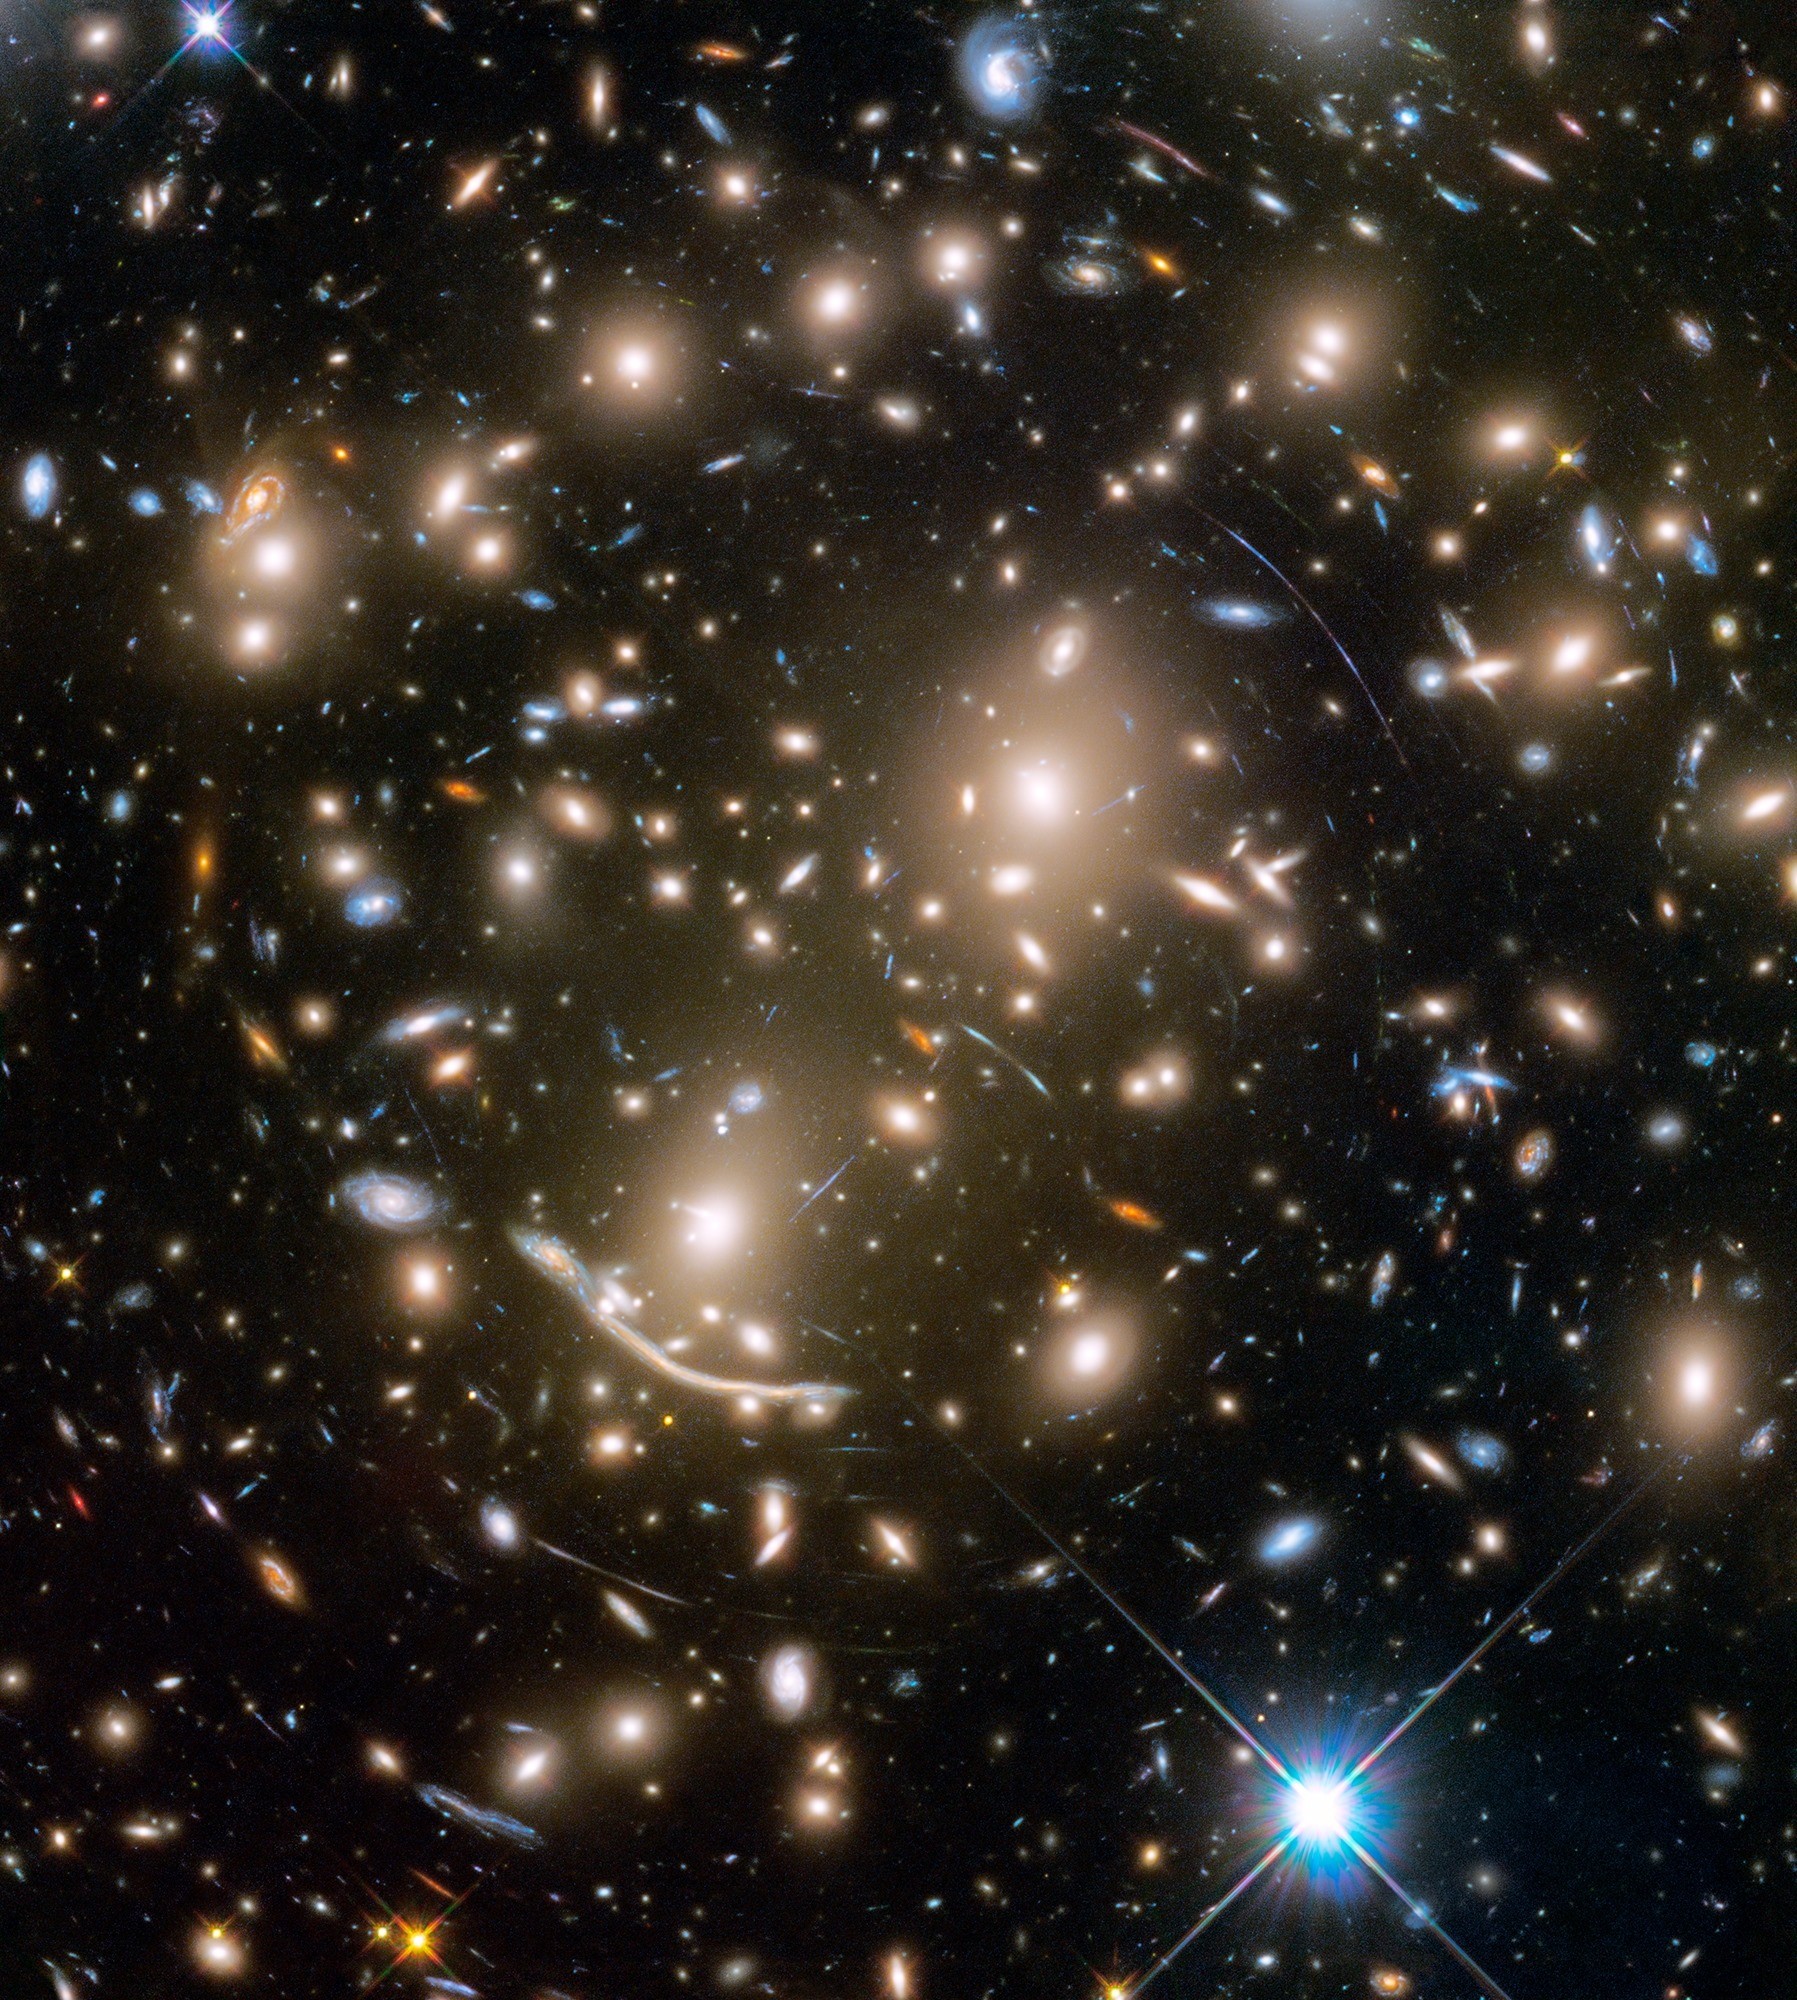 Des milliers de galaxies à travers l’effet d’une lentille naturelle